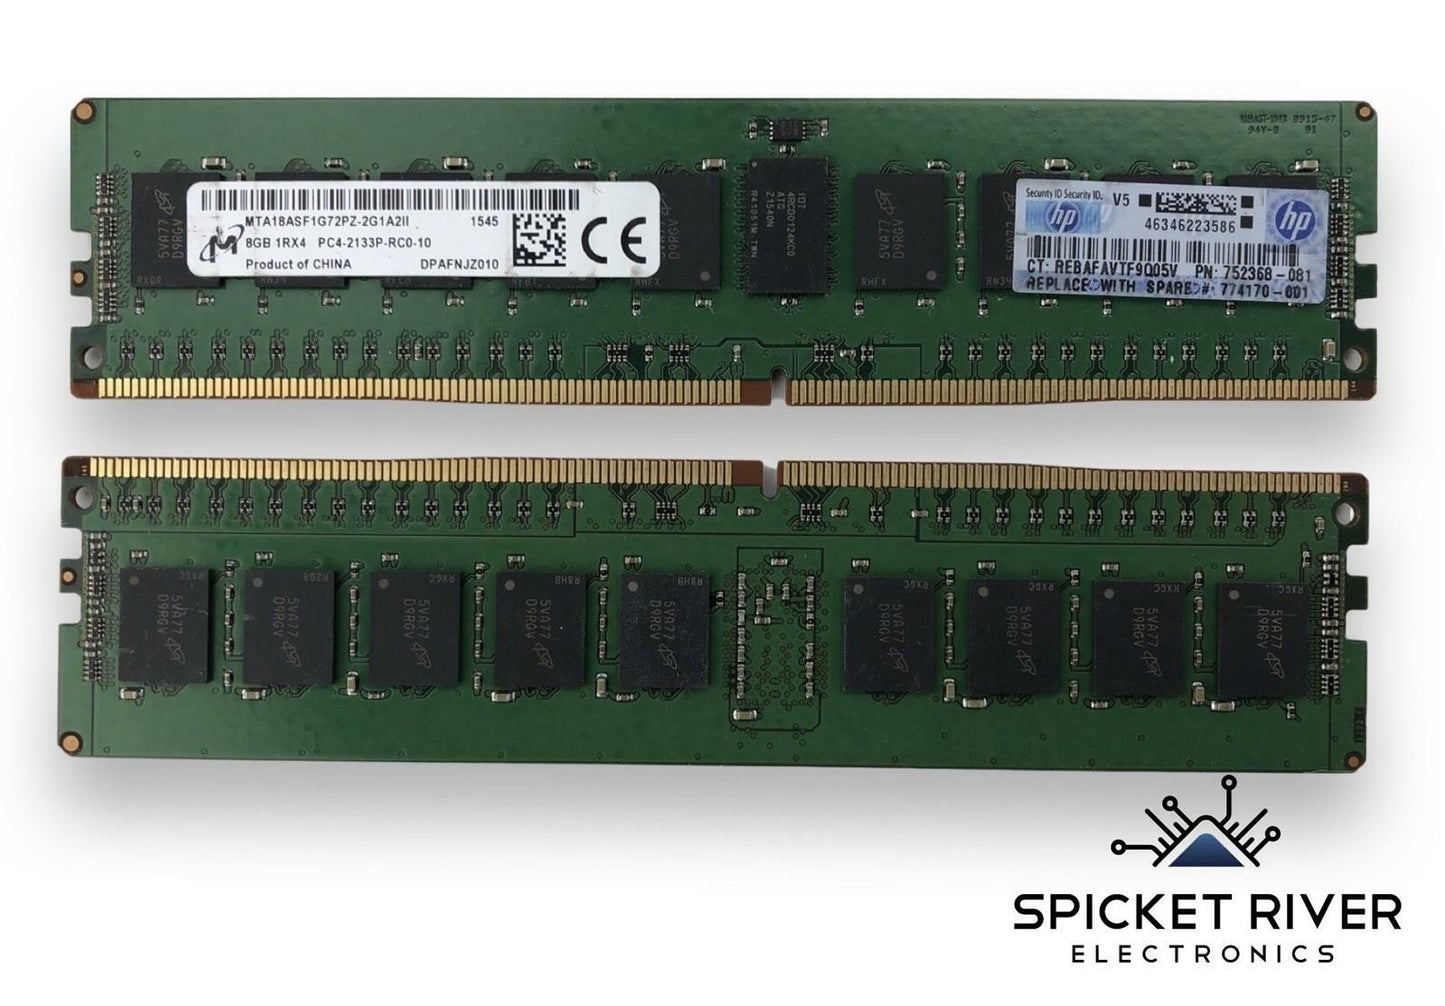 Lot of 2 - HP Micron MTA18ASF1G72PZ-2G1A2 8GB DDR4 PC4-2133P Server RAM Memory